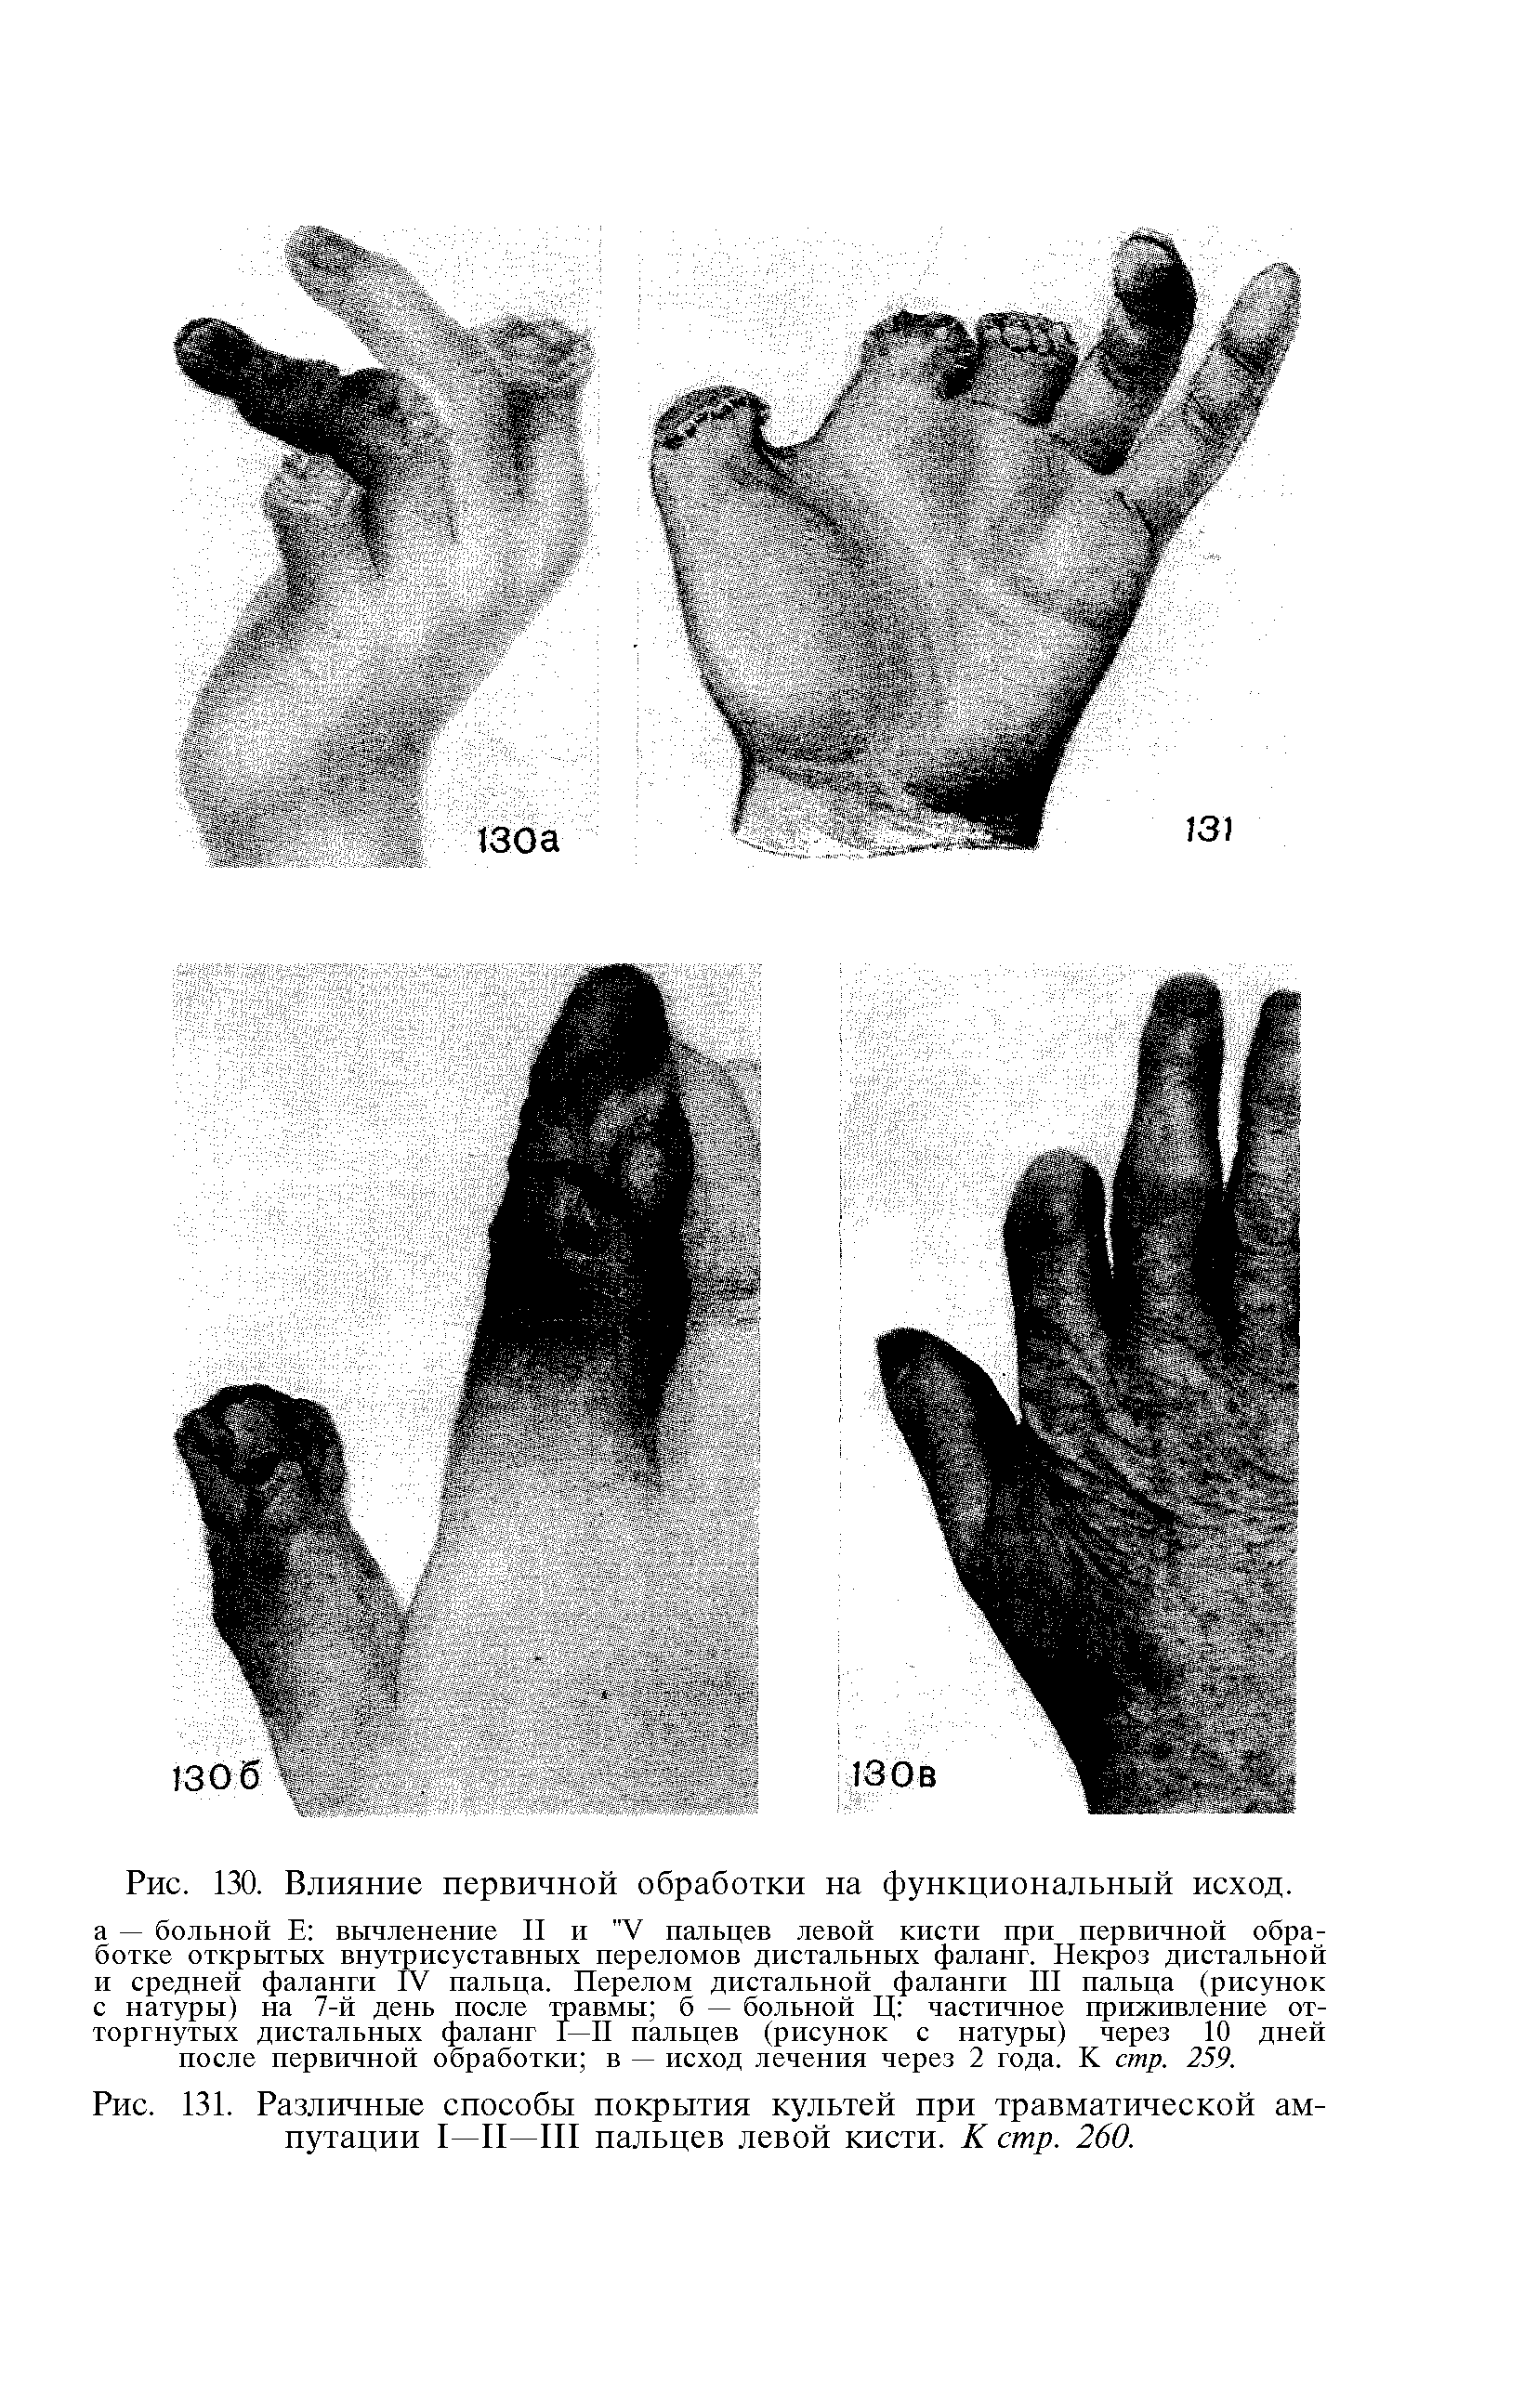 Рис. 131. Различные способы покрытия культей при травматической ампутации I—II—III пальцев левой кисти. К стр. 260.